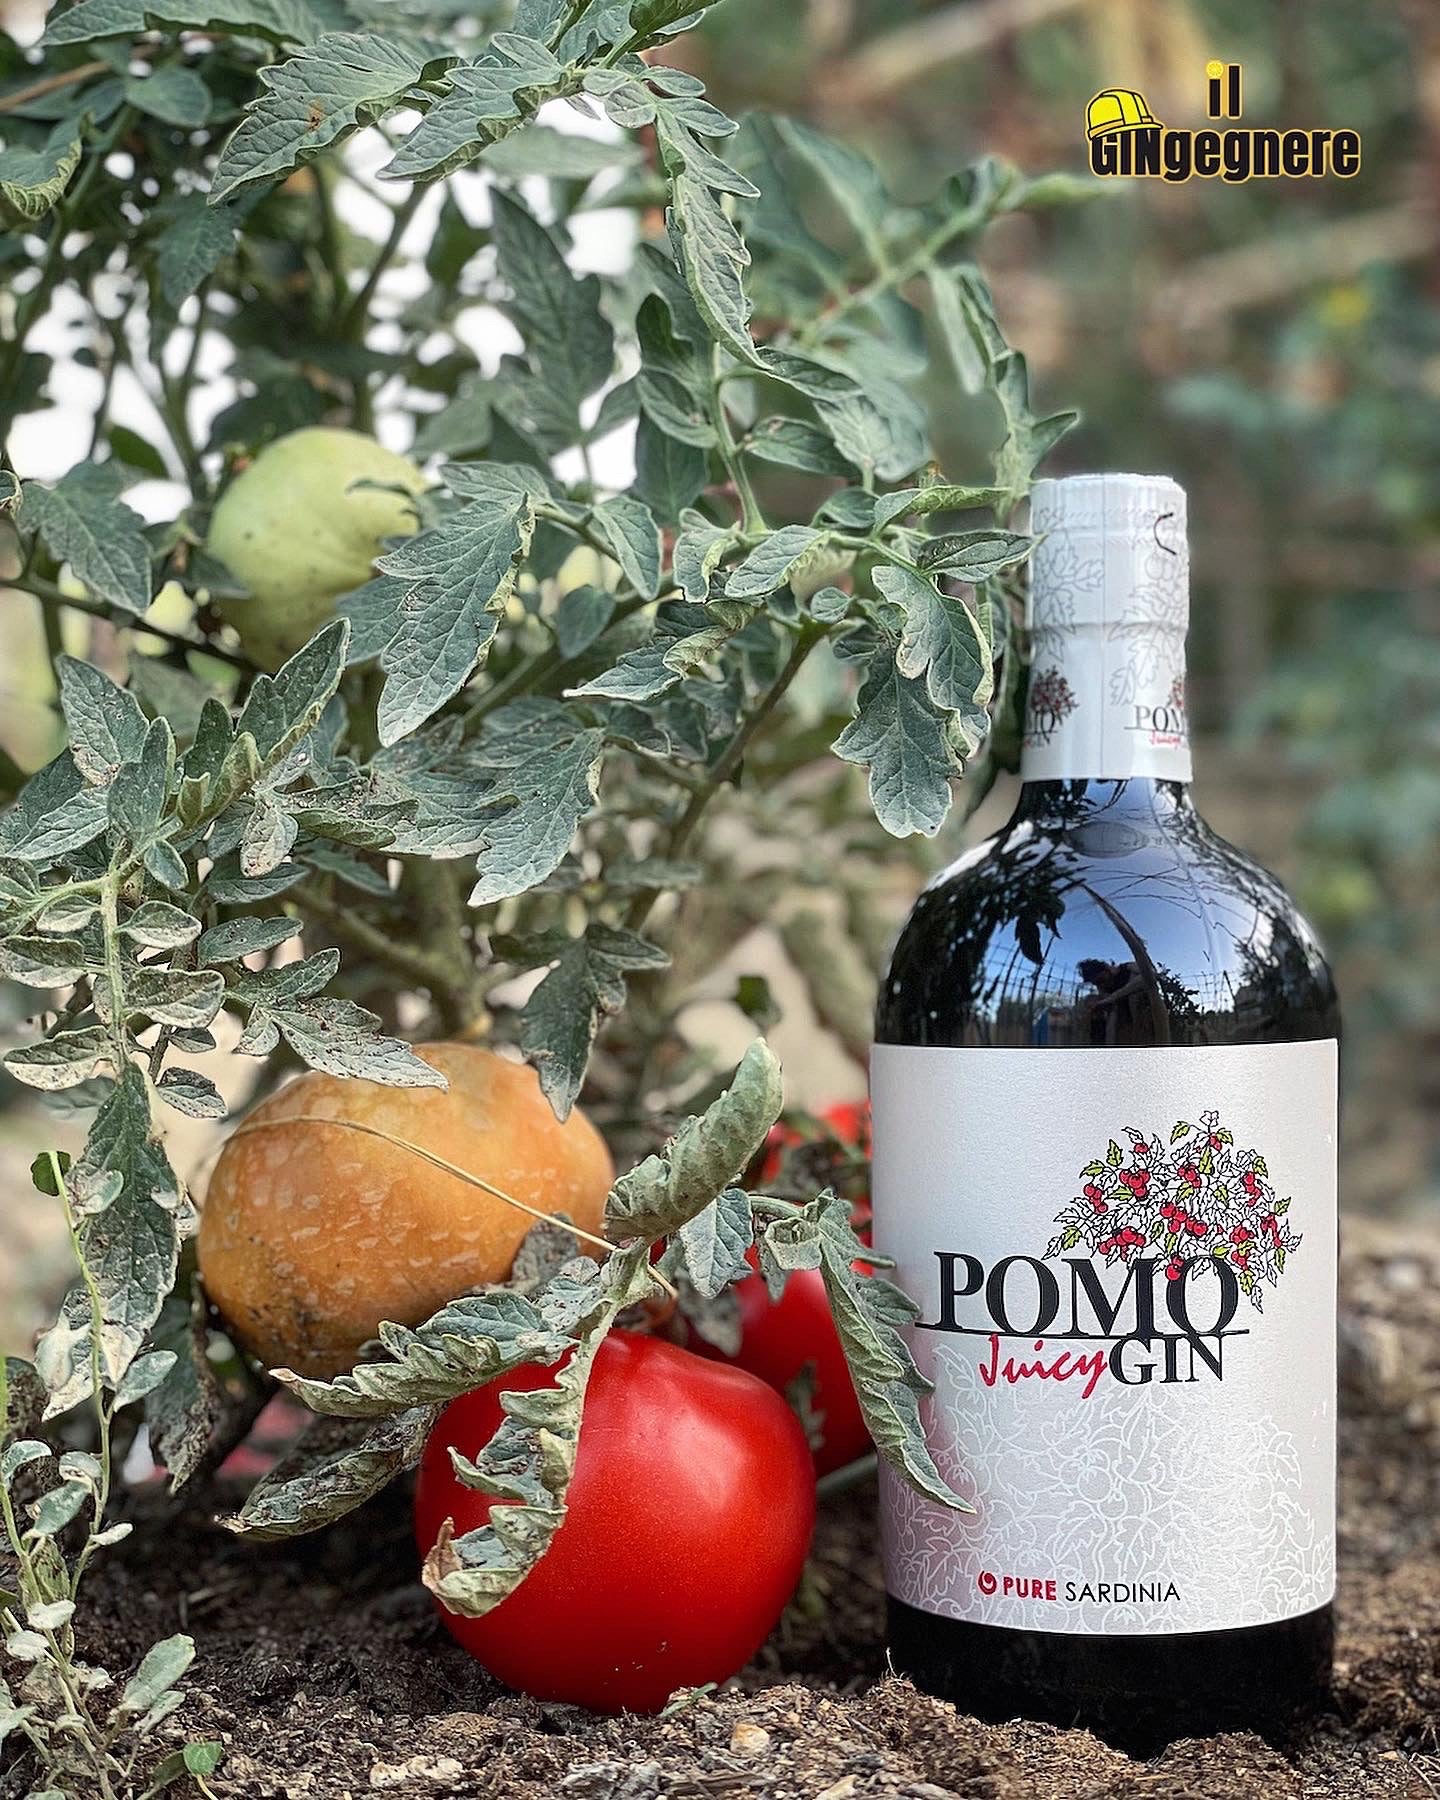 Pomo Juicy Gin by Pure Sardinia